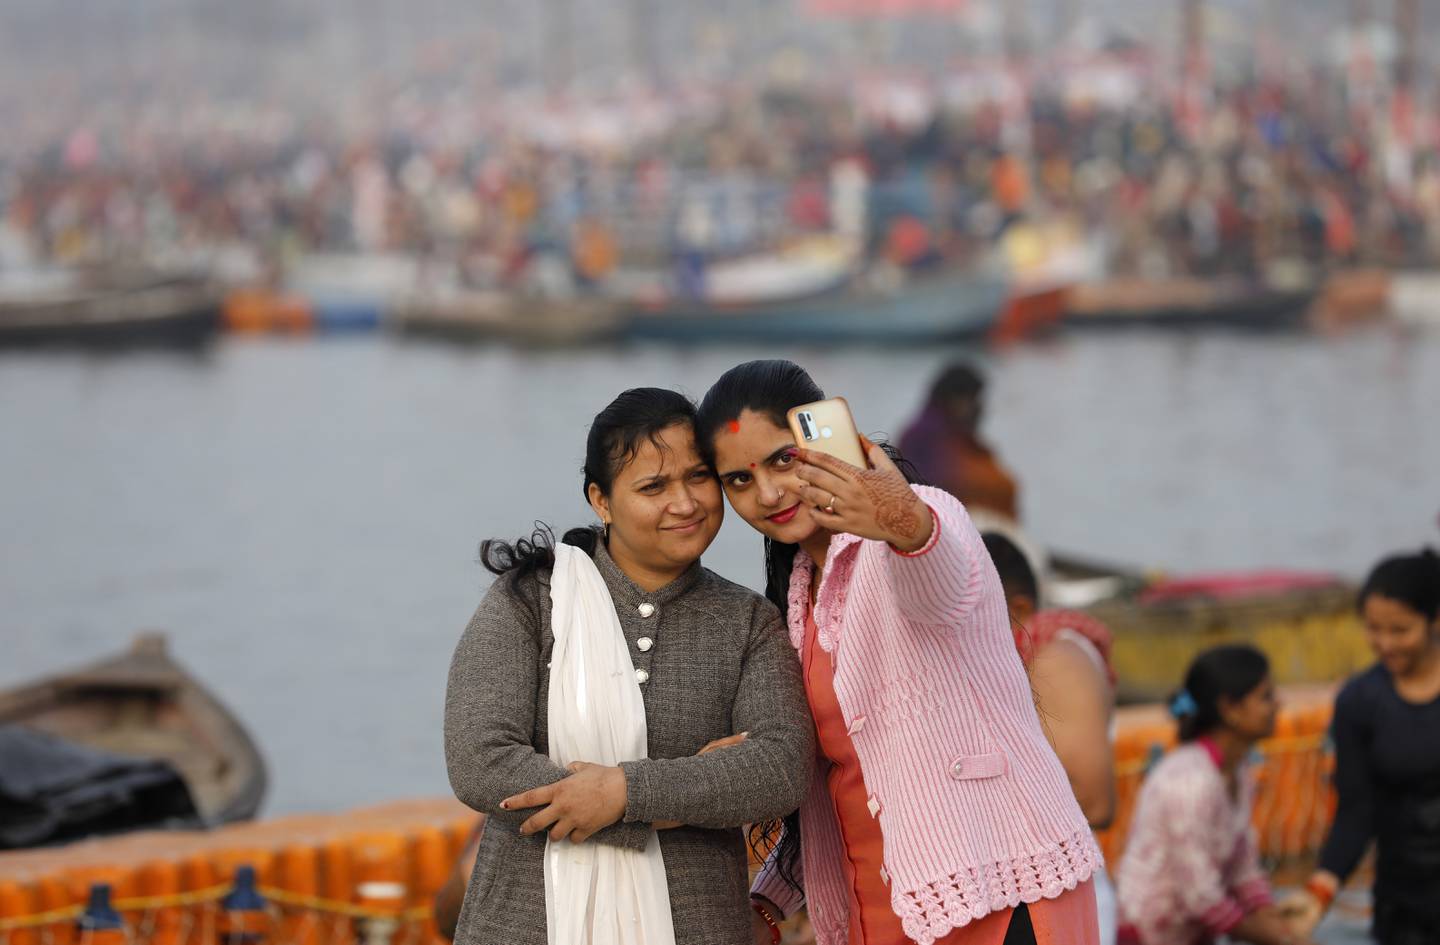 Deg selv i sentrum – uansett – og ta bilde av det. Verden åpner i større grad opp for alle de ulike individene den rommer, alle har verdi og behov., de skal følges opp. Her er det hinduer som foreviger minnet om en hellig dukkert i Sangam, Foto: Rajesh Kumar Singh / AP / NTB